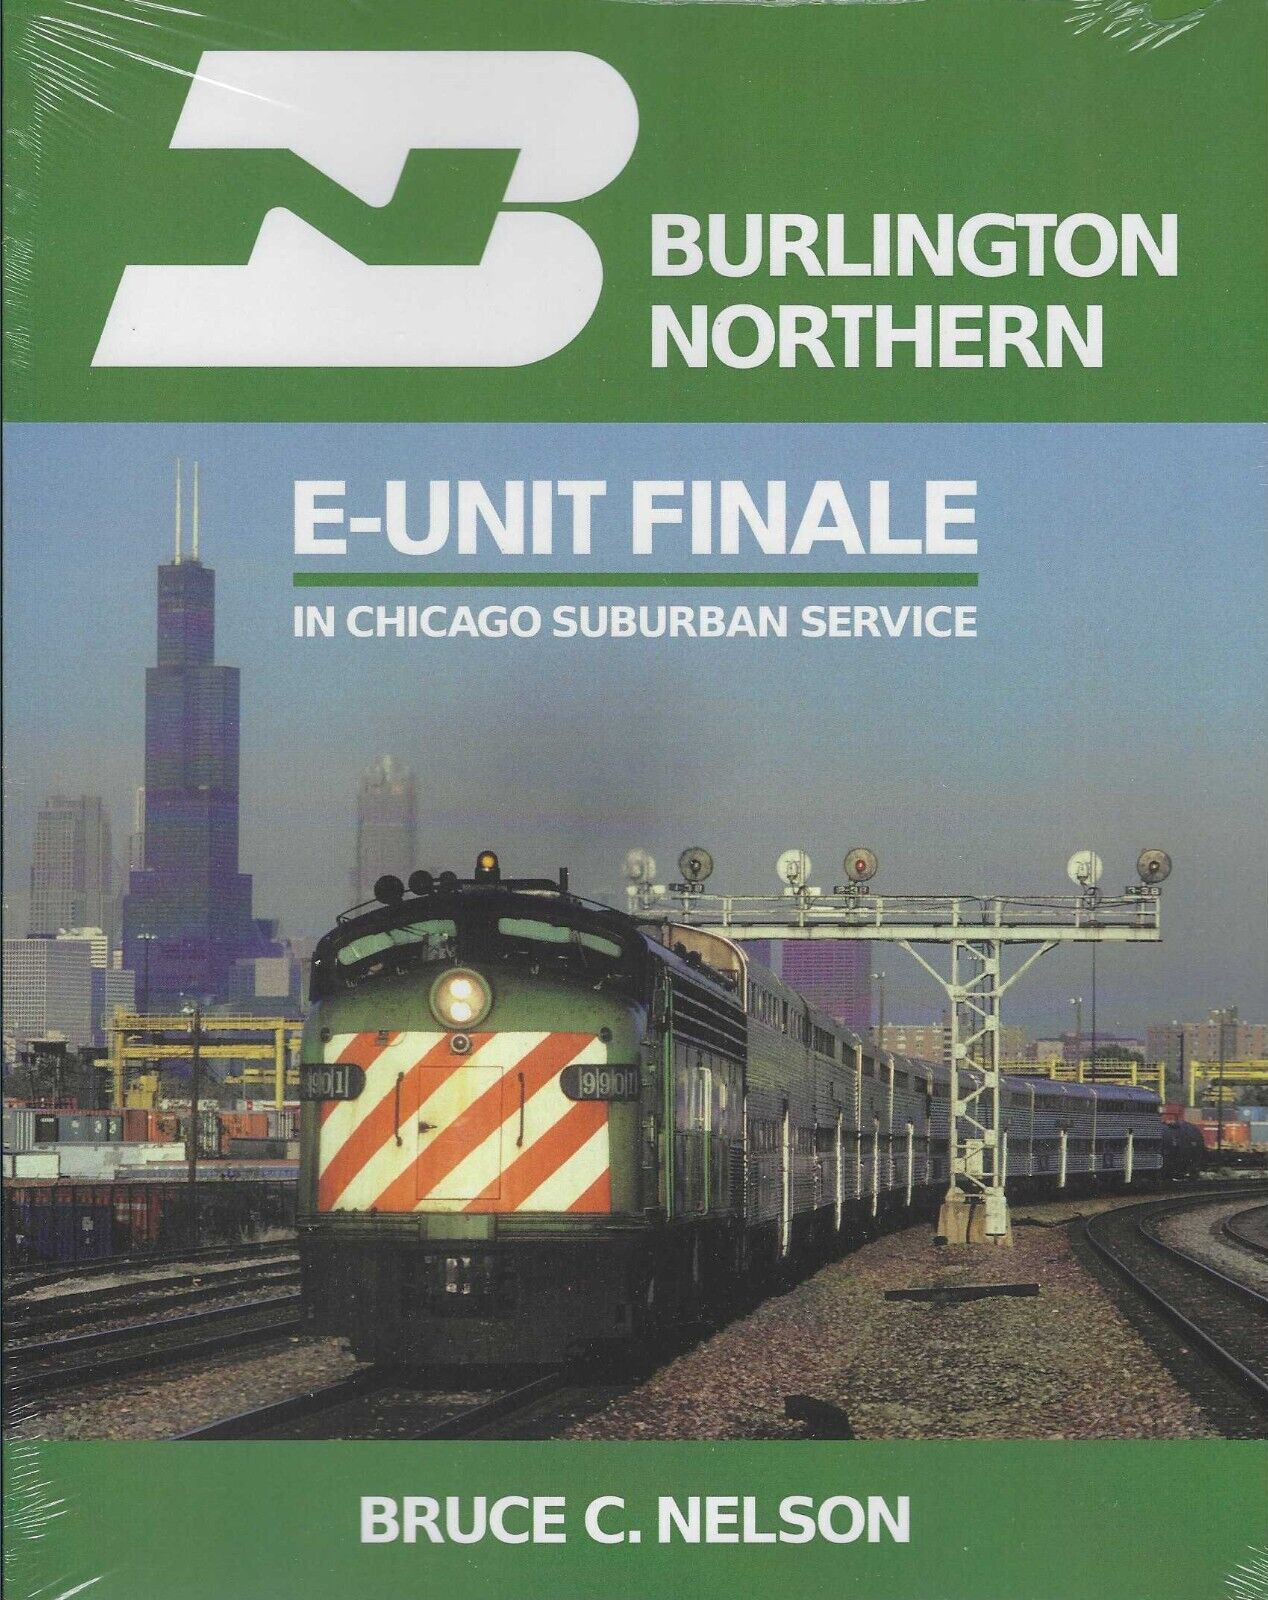 Burlington Northern E-Unit Finale in CHICAGO Suburban Service (BRAND NEW BOOK)